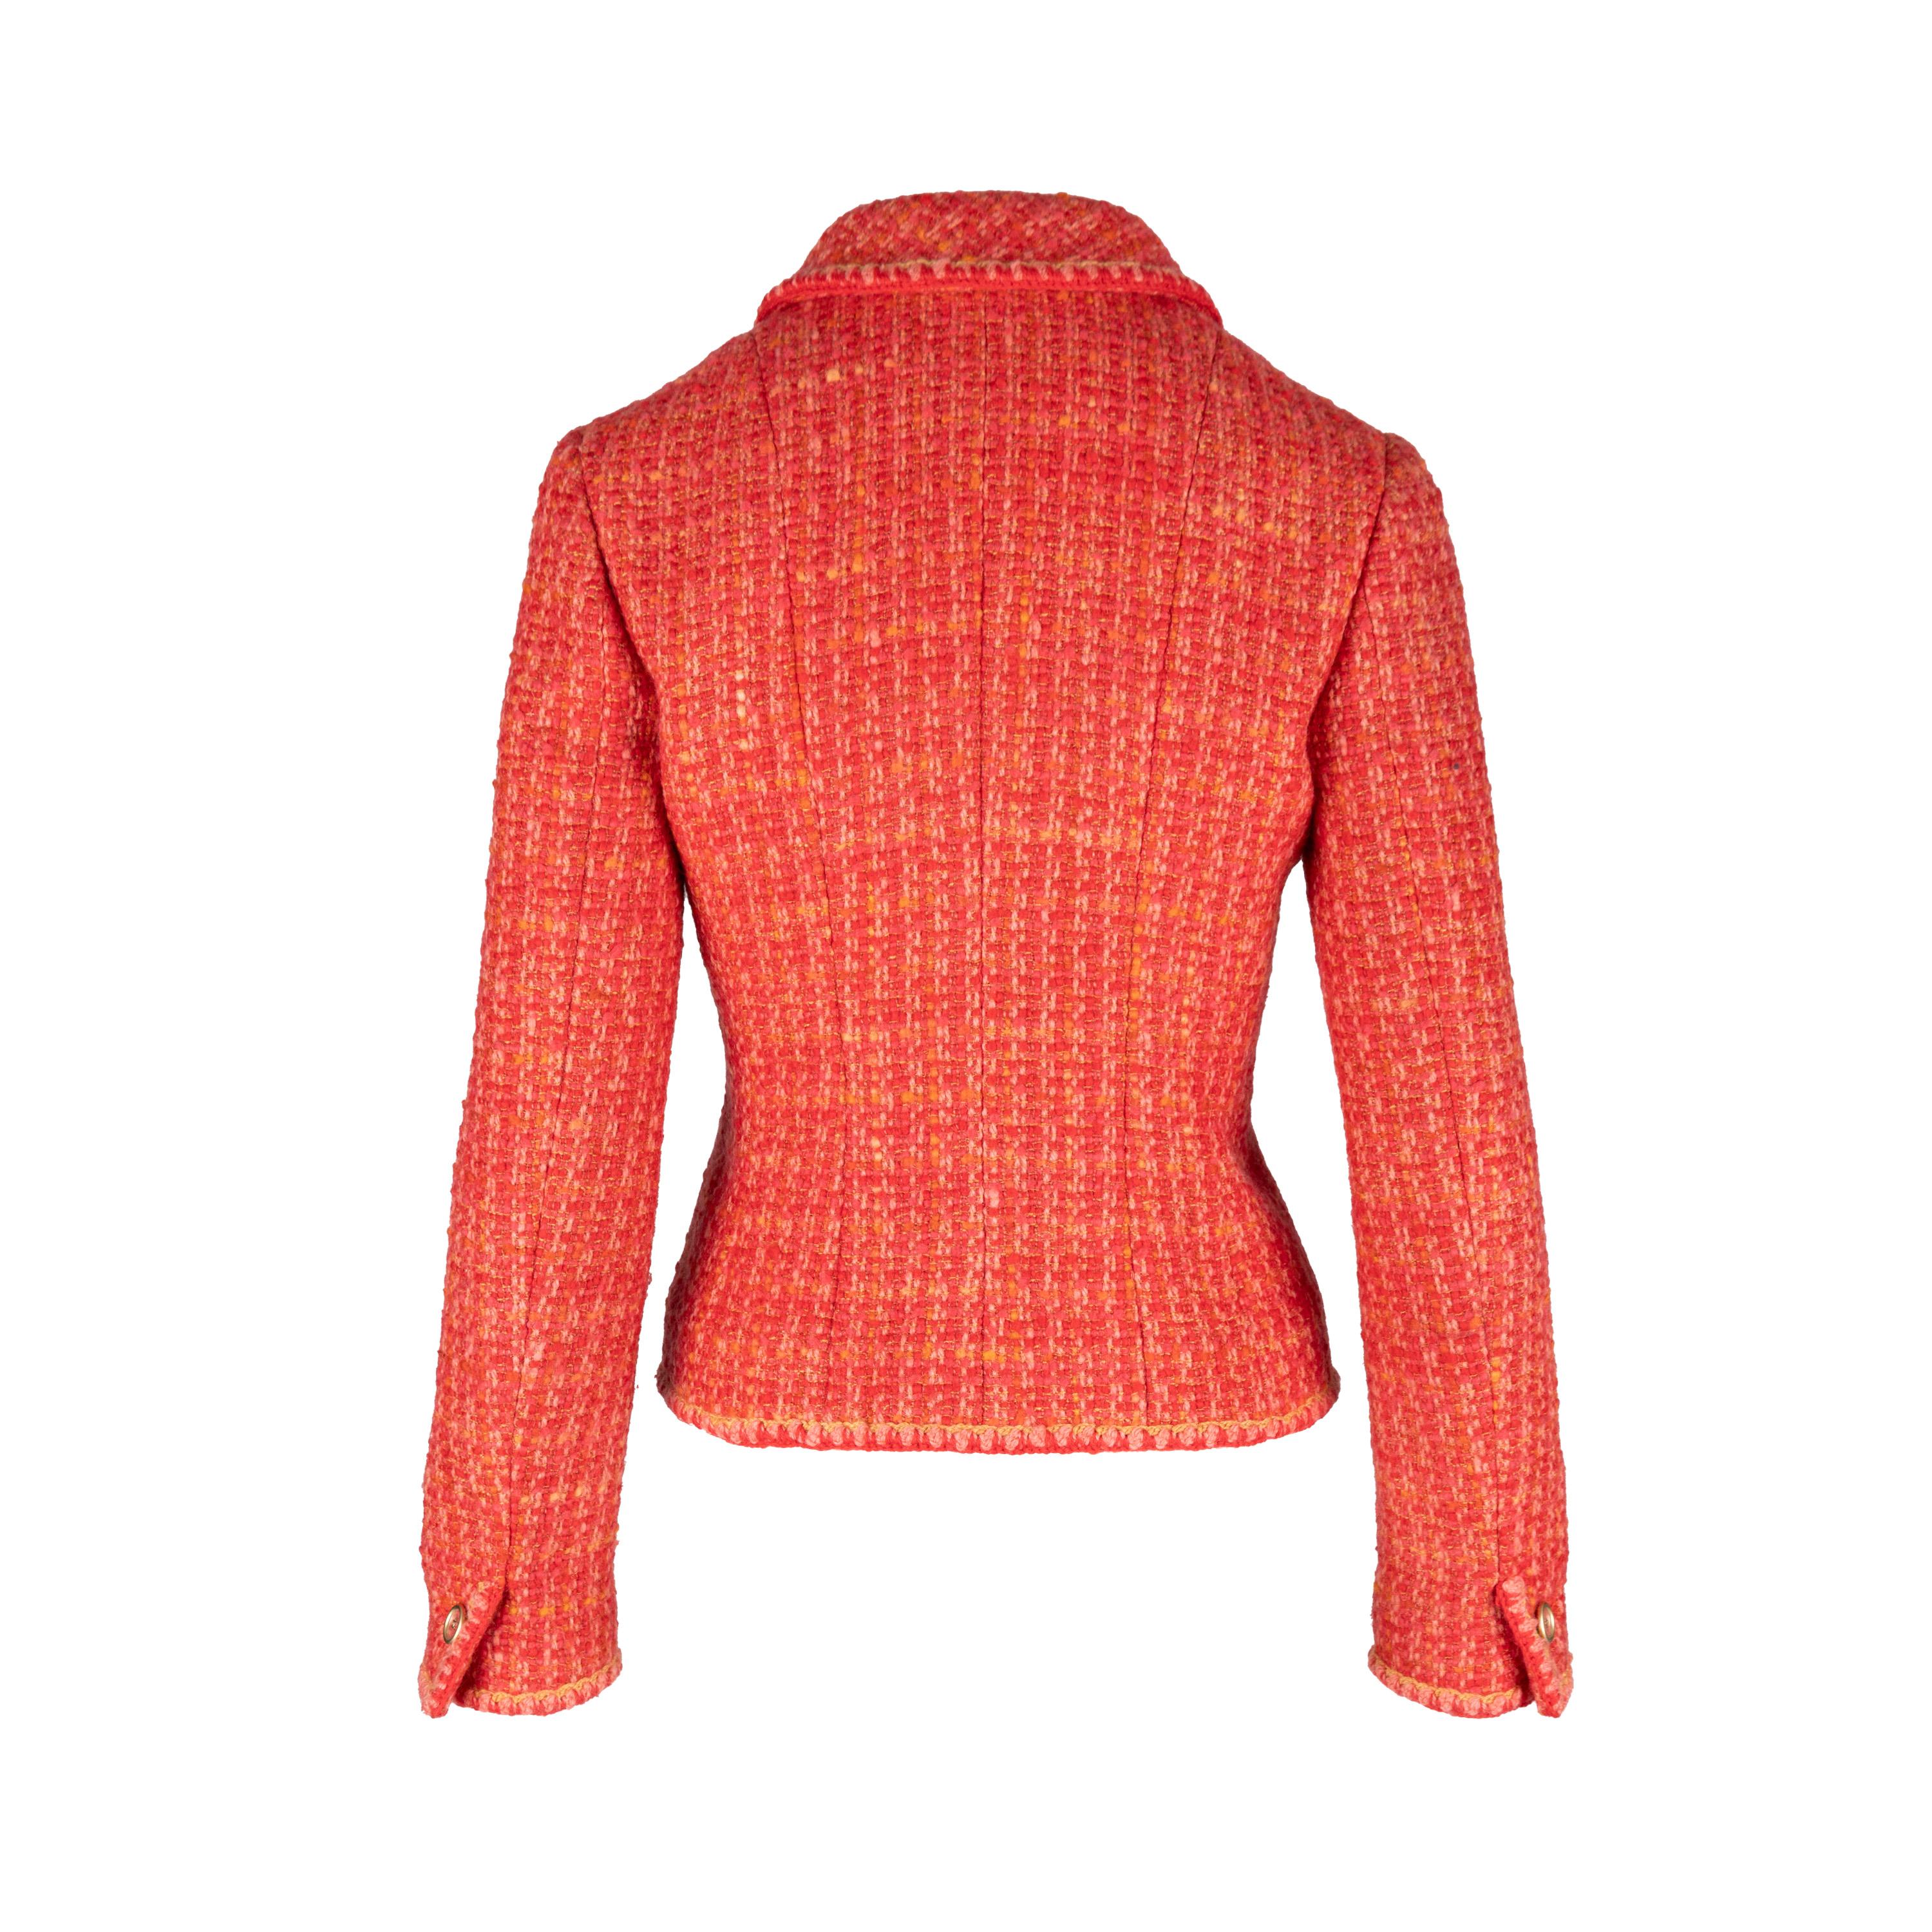 Diese klassische Tweedjacke von Chanel ist schmal geschnitten, aus leuchtend rotem Wolltweed gefertigt und mit den ikonischen transparenten Knöpfen mit CC-Logo verziert. Die Jacke ist außerdem mit einem mit Kamelien bedruckten Seidenfutter,